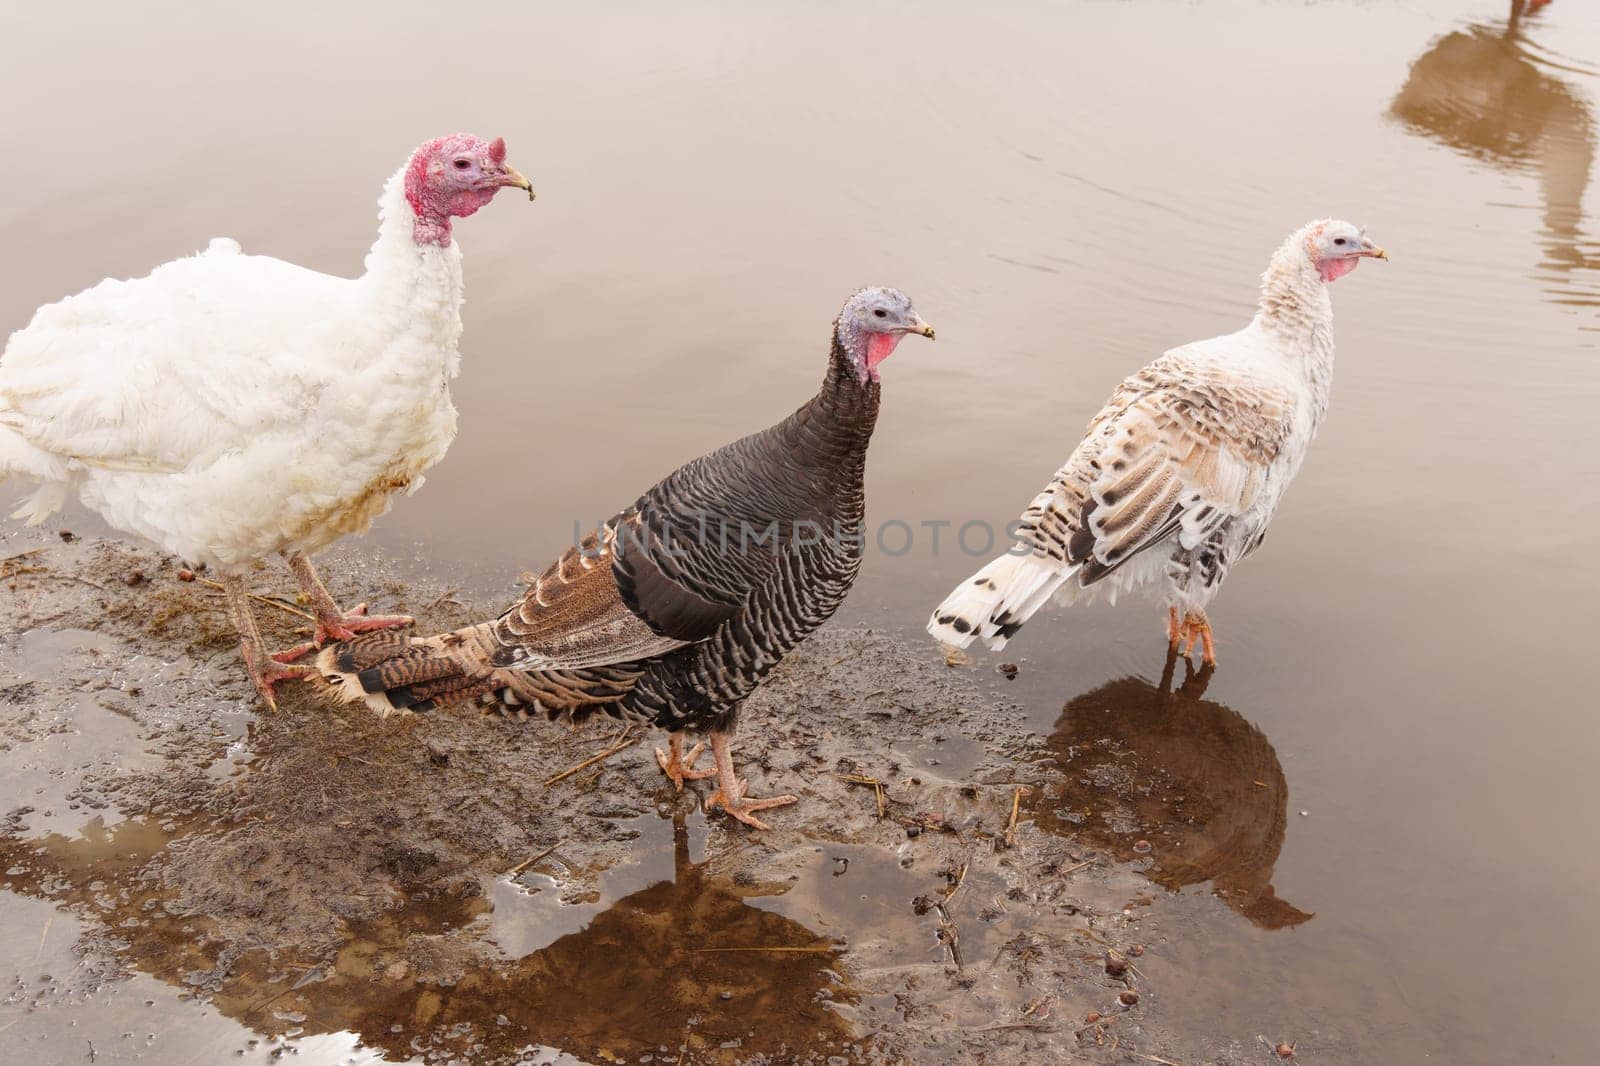 Turkeys on a farm walking in paddock. Flock of Turkeys in paddock on farm. by darksoul72